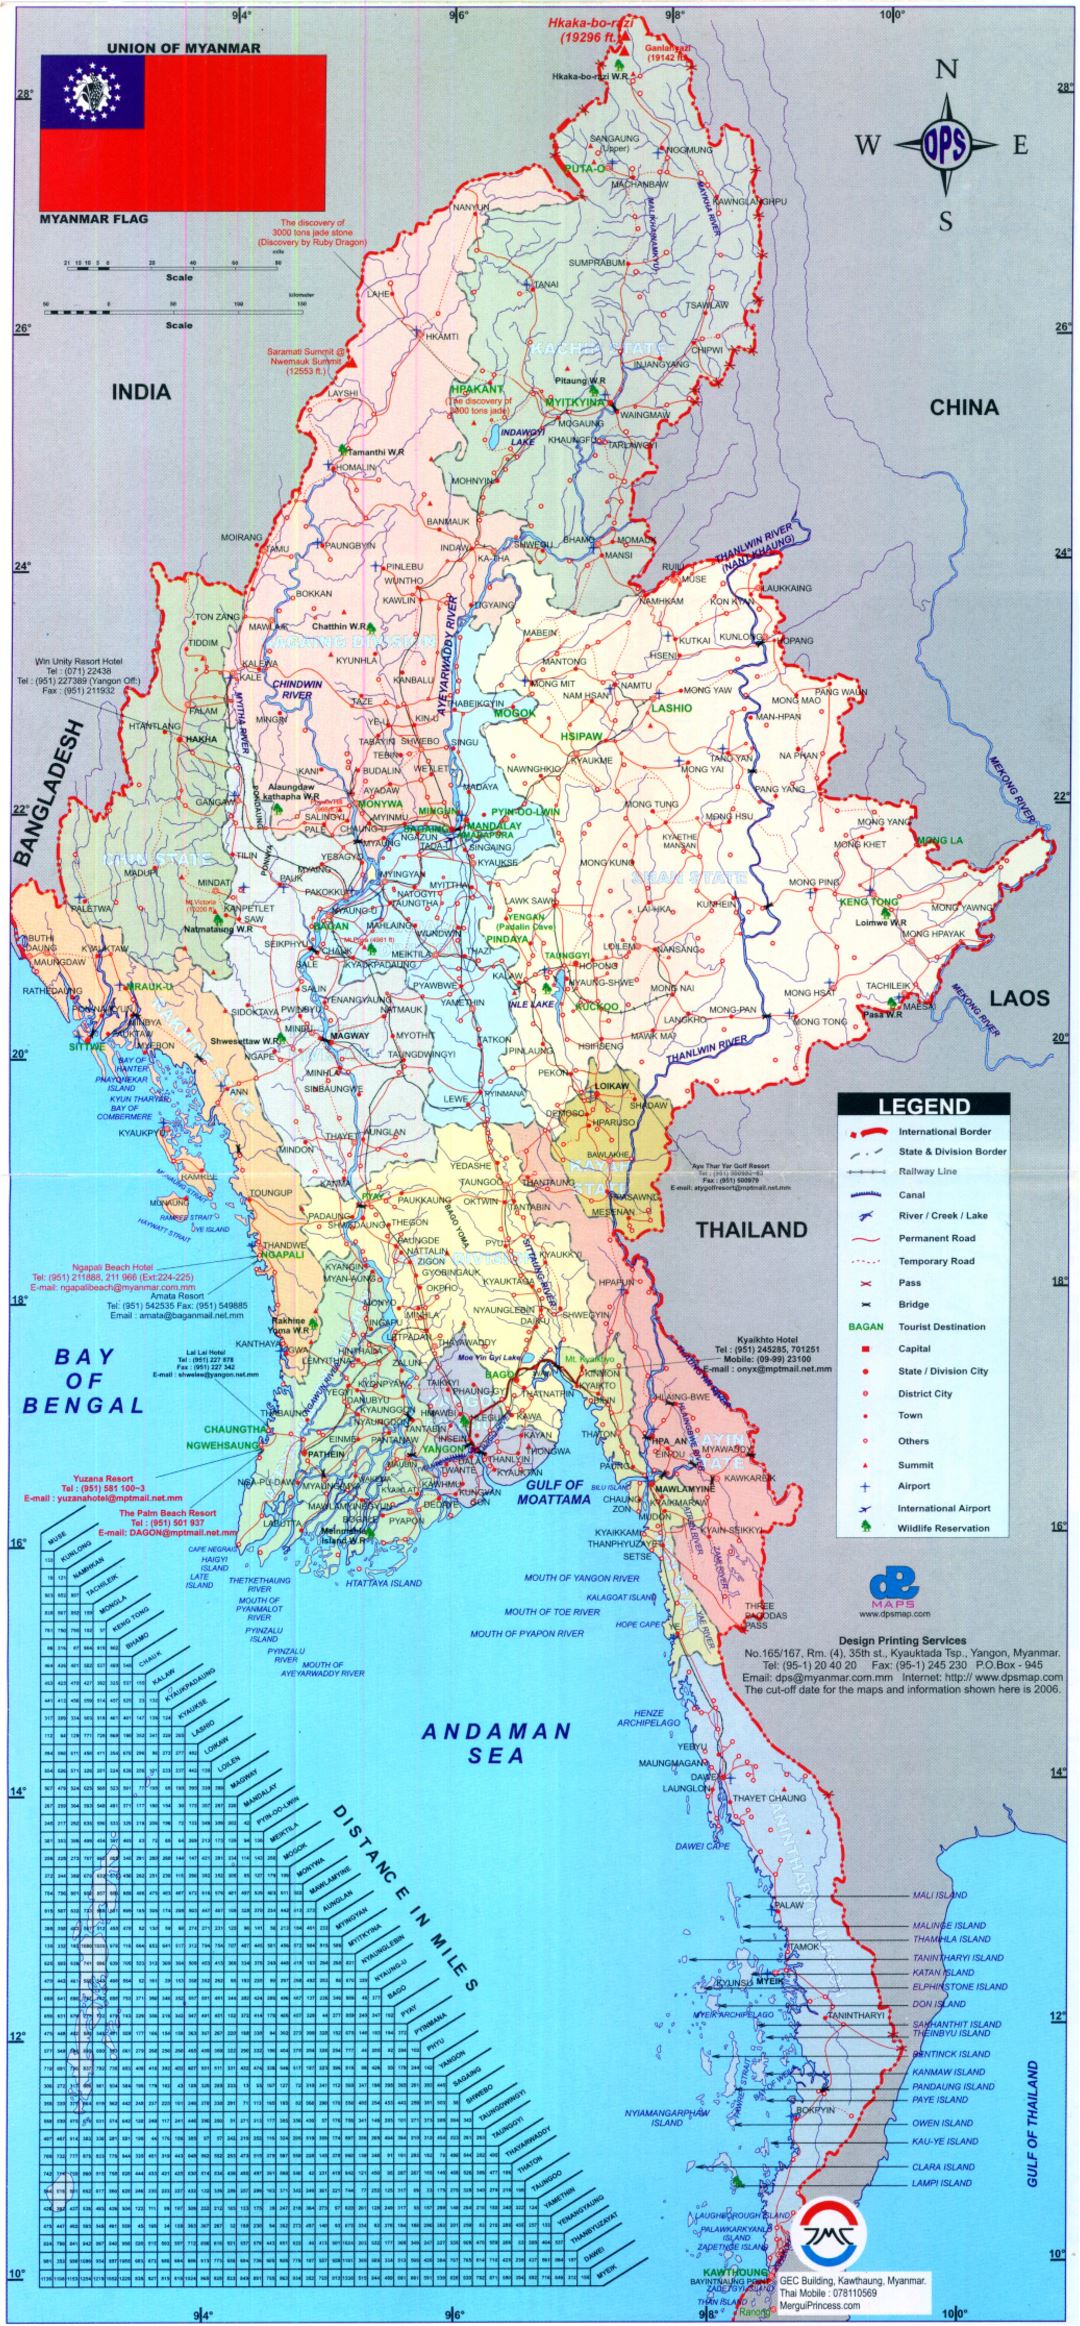 Grande mapa político y administrativo de Birmania